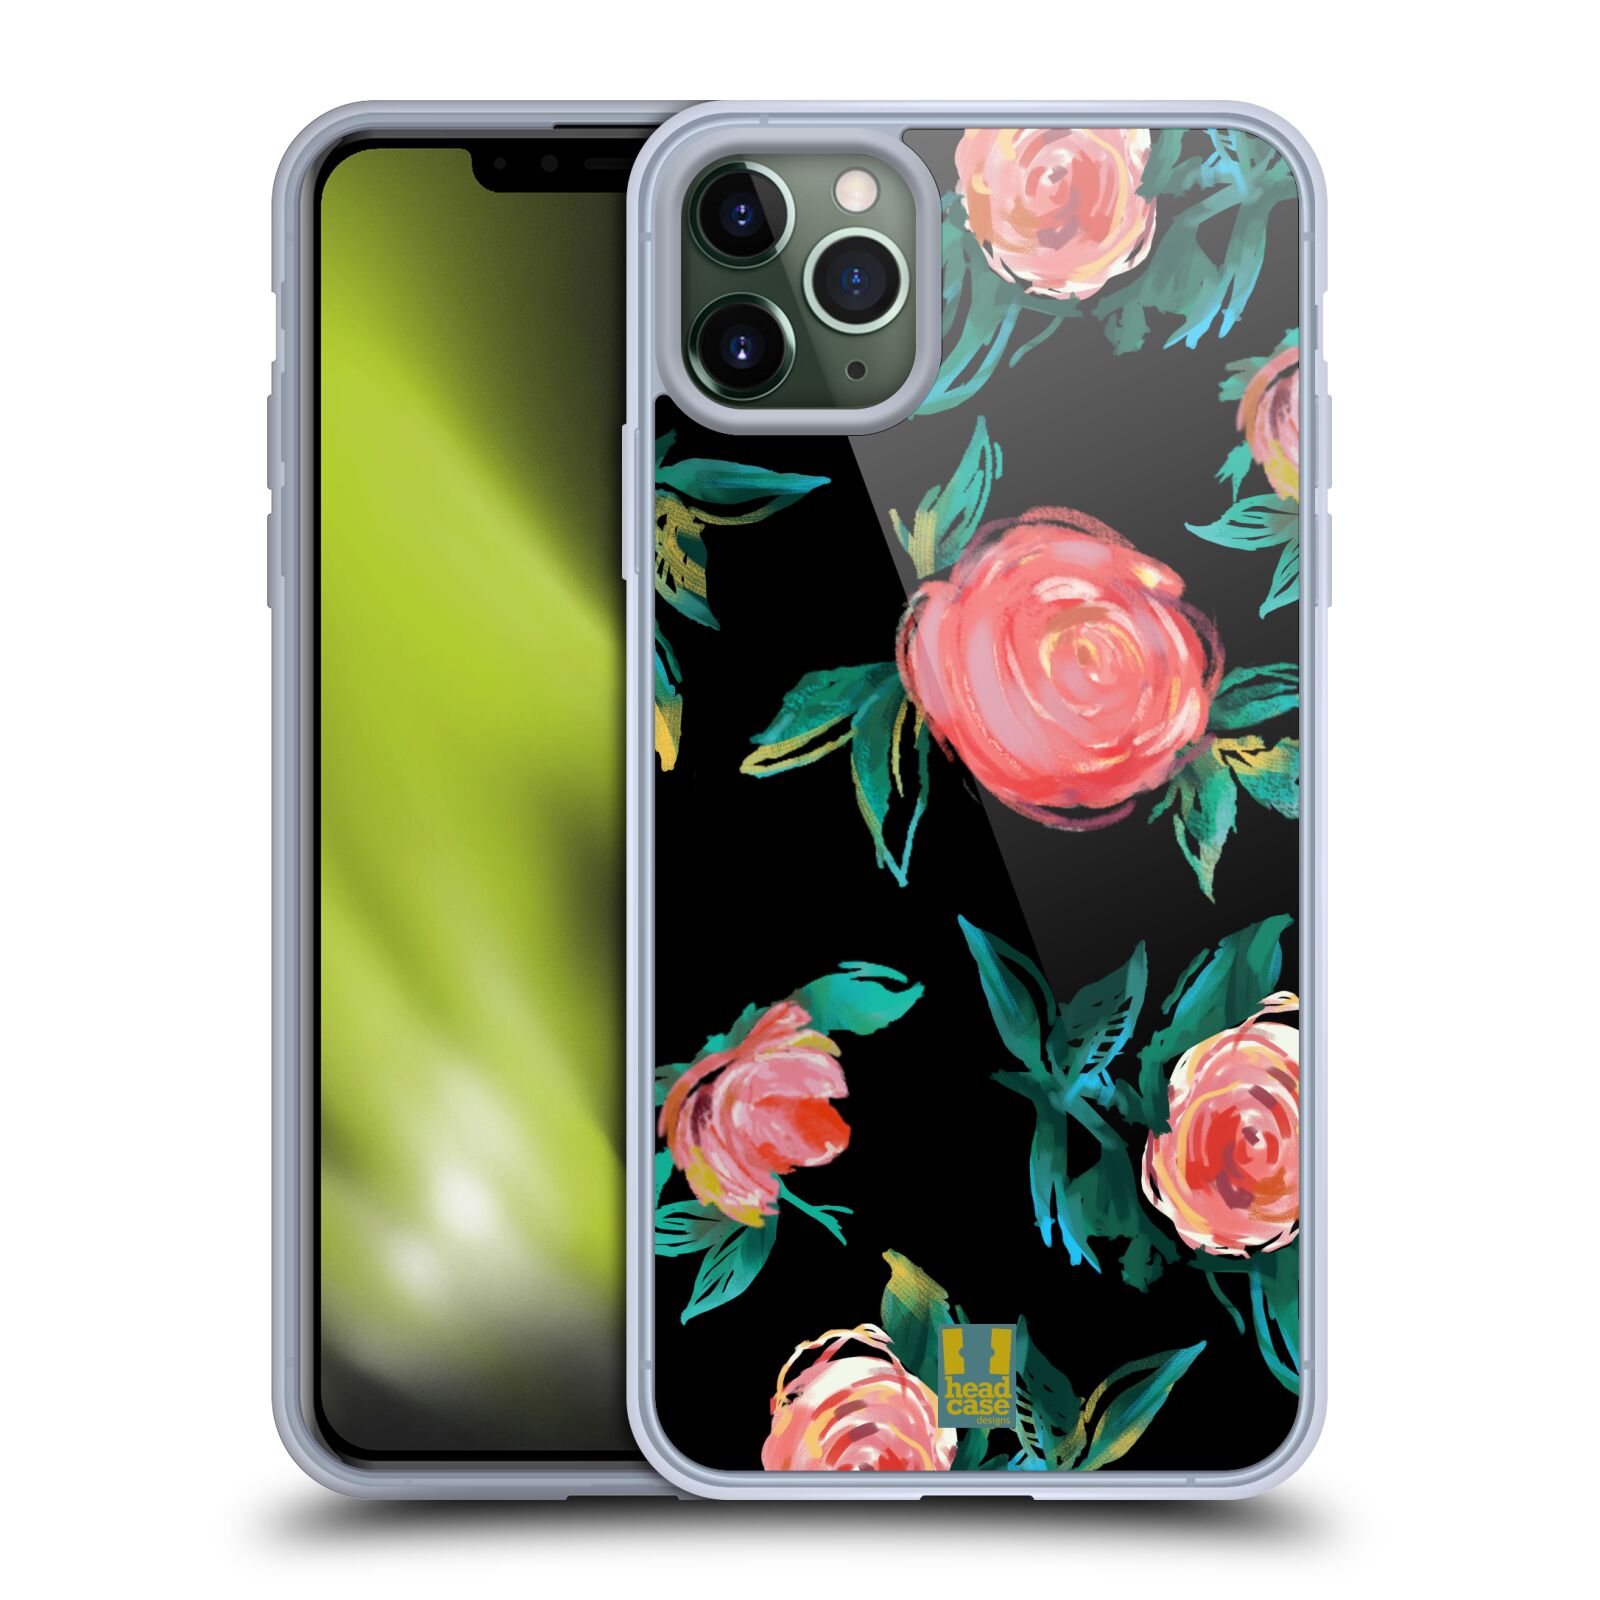 Silikonový obal na mobil Apple Iphone 11 PRO MAX - HEAD CASE - Květy - růže na černém pozadí